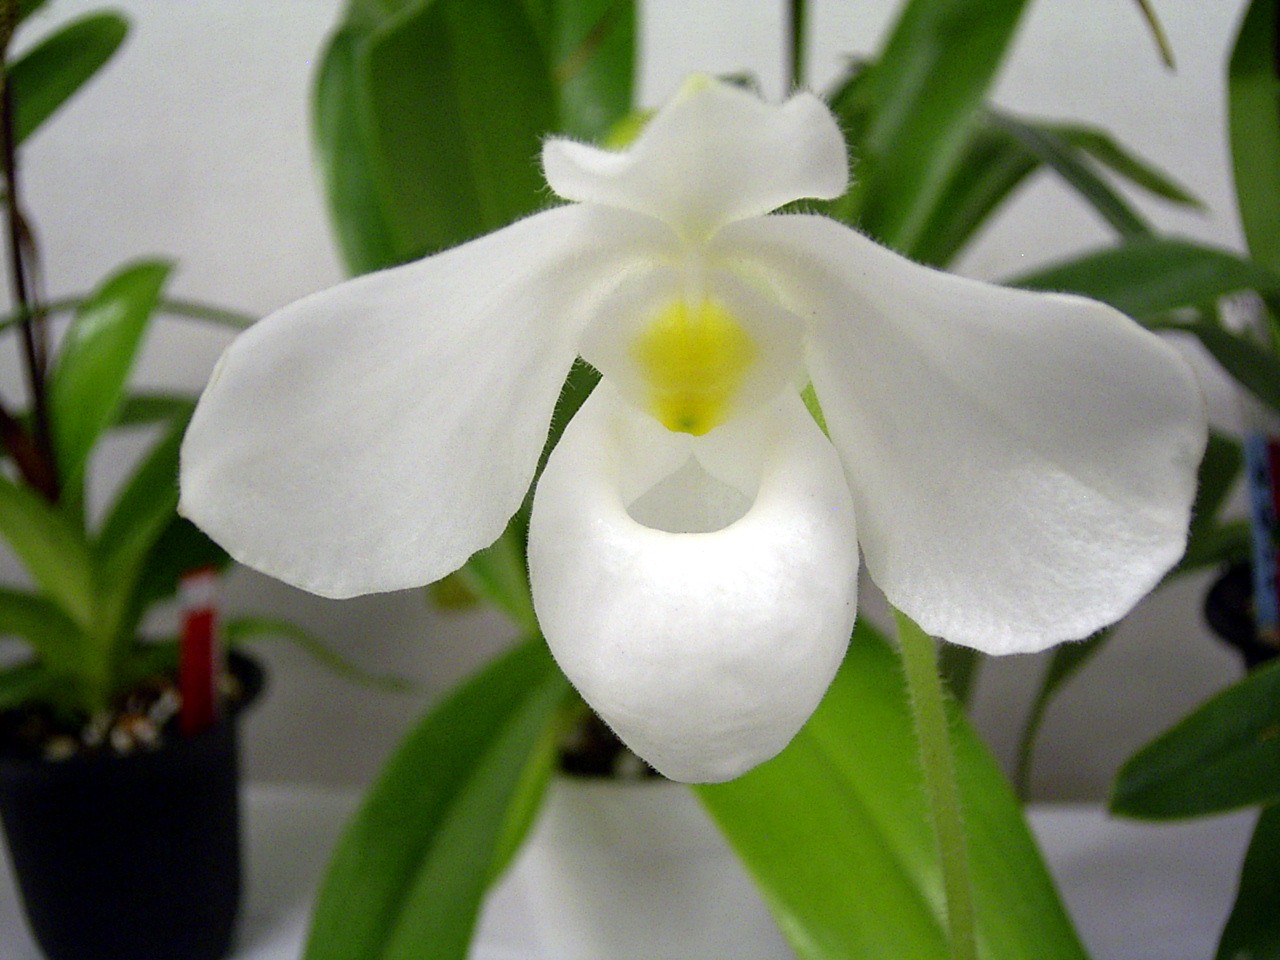 http://orchids.la.coocan.jp/Paphiopedilum/Paphiopedilum%20delenatii%20album/R0053322.JPG